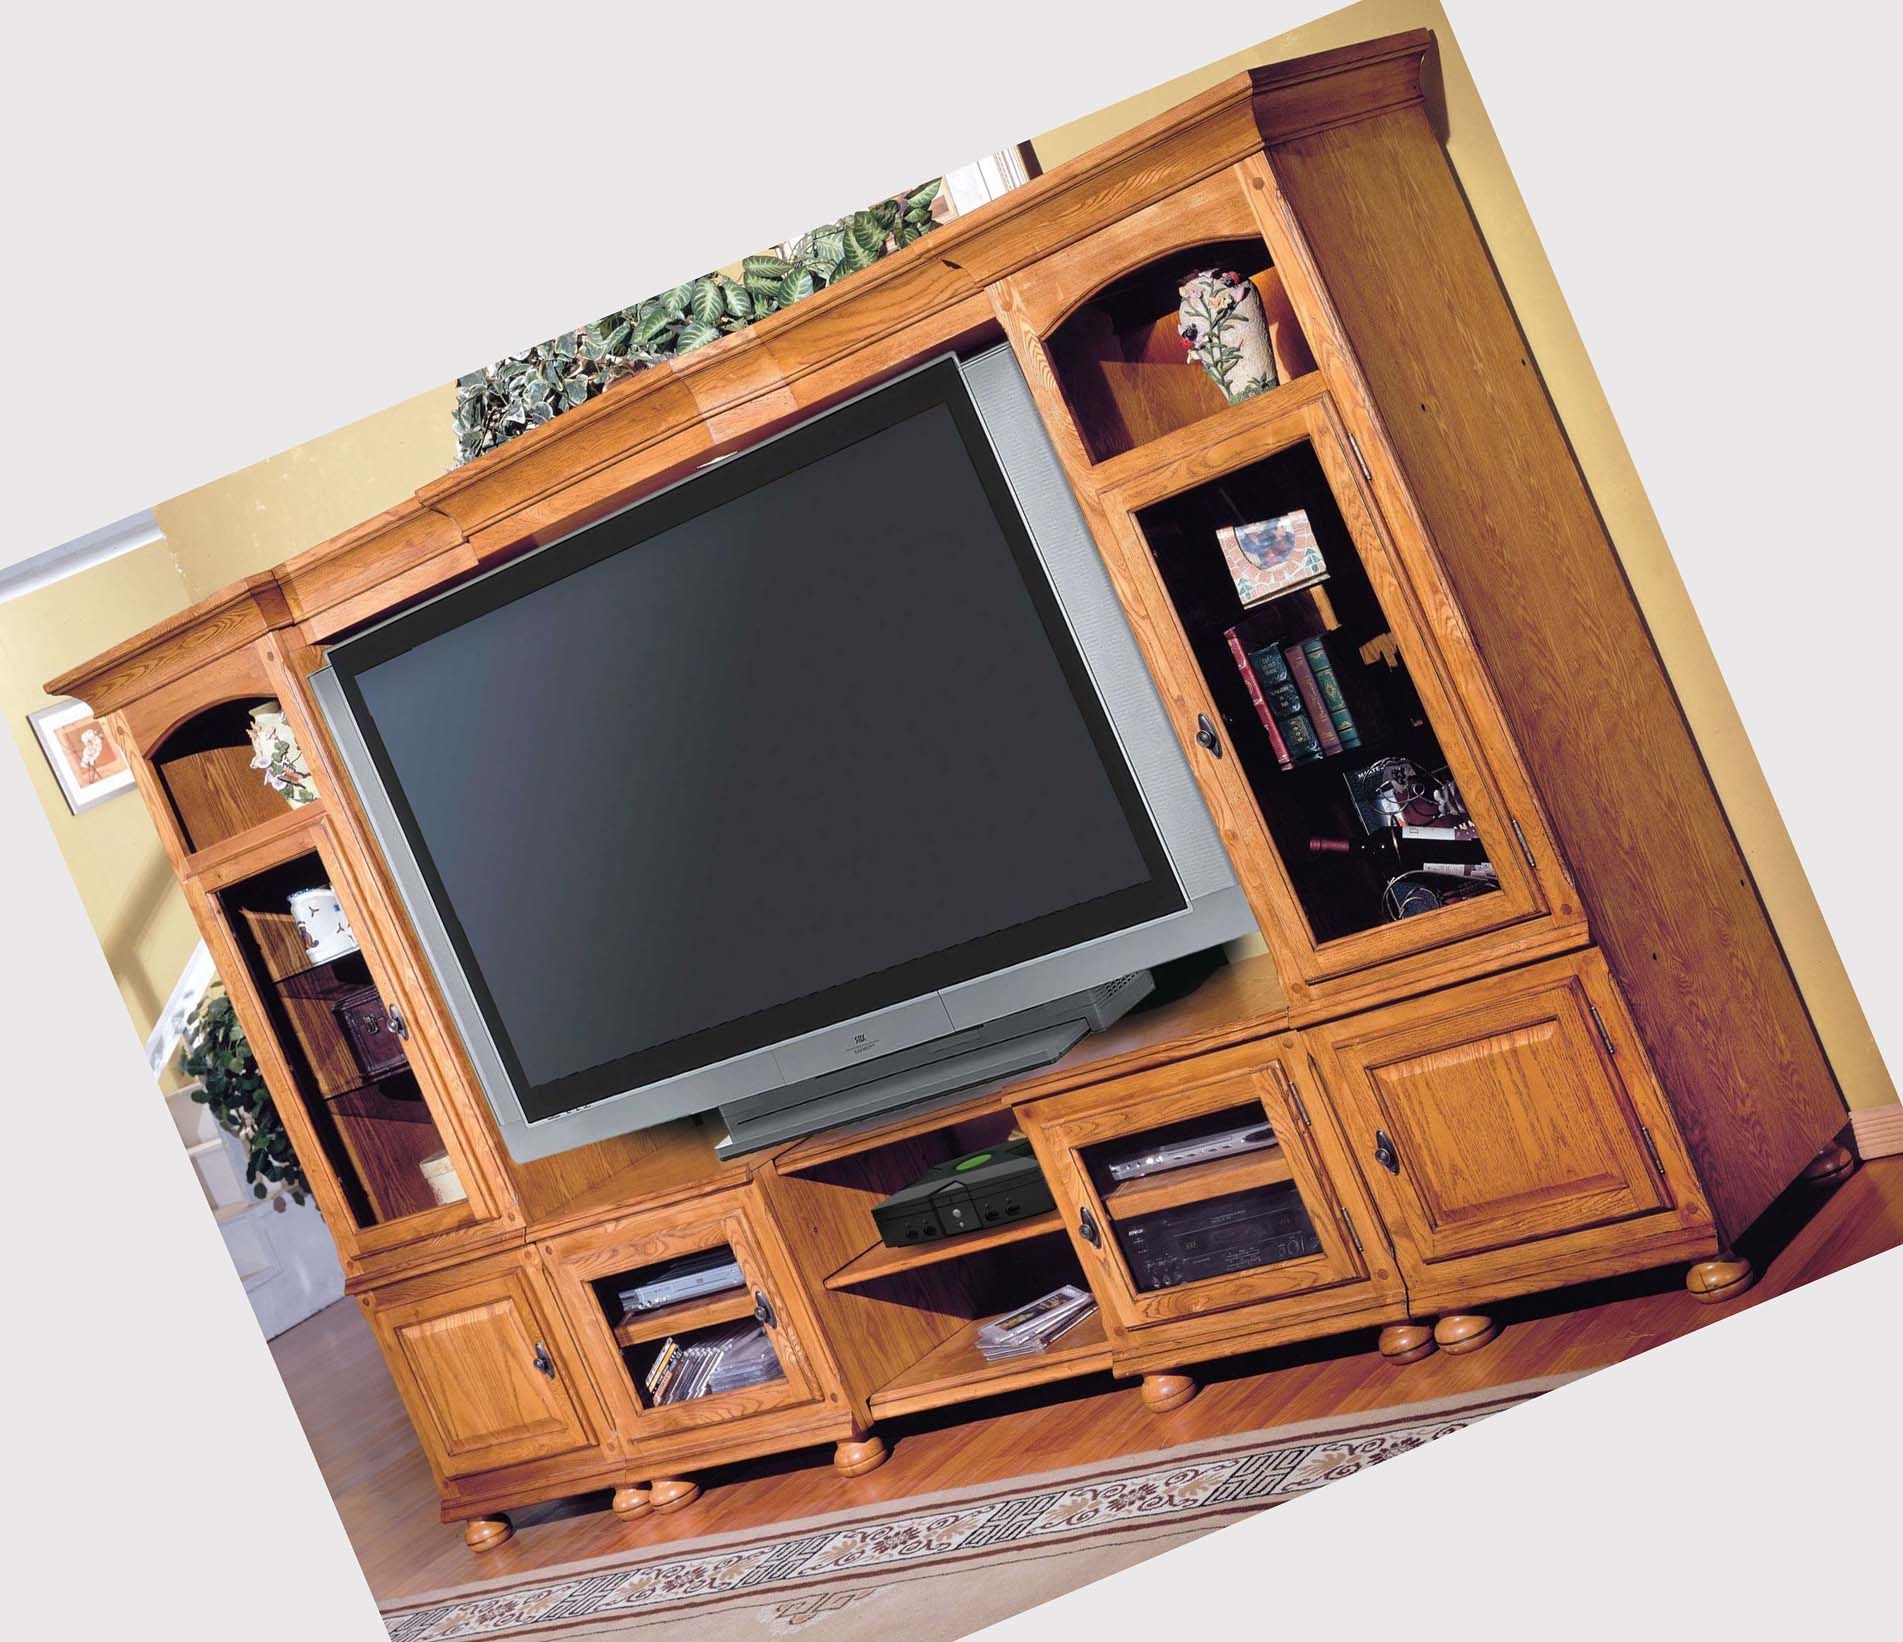 Oak Tv Stands For Flat Screen Inside Oak Corner Tv Stands For Flat Screens (View 13 of 15)